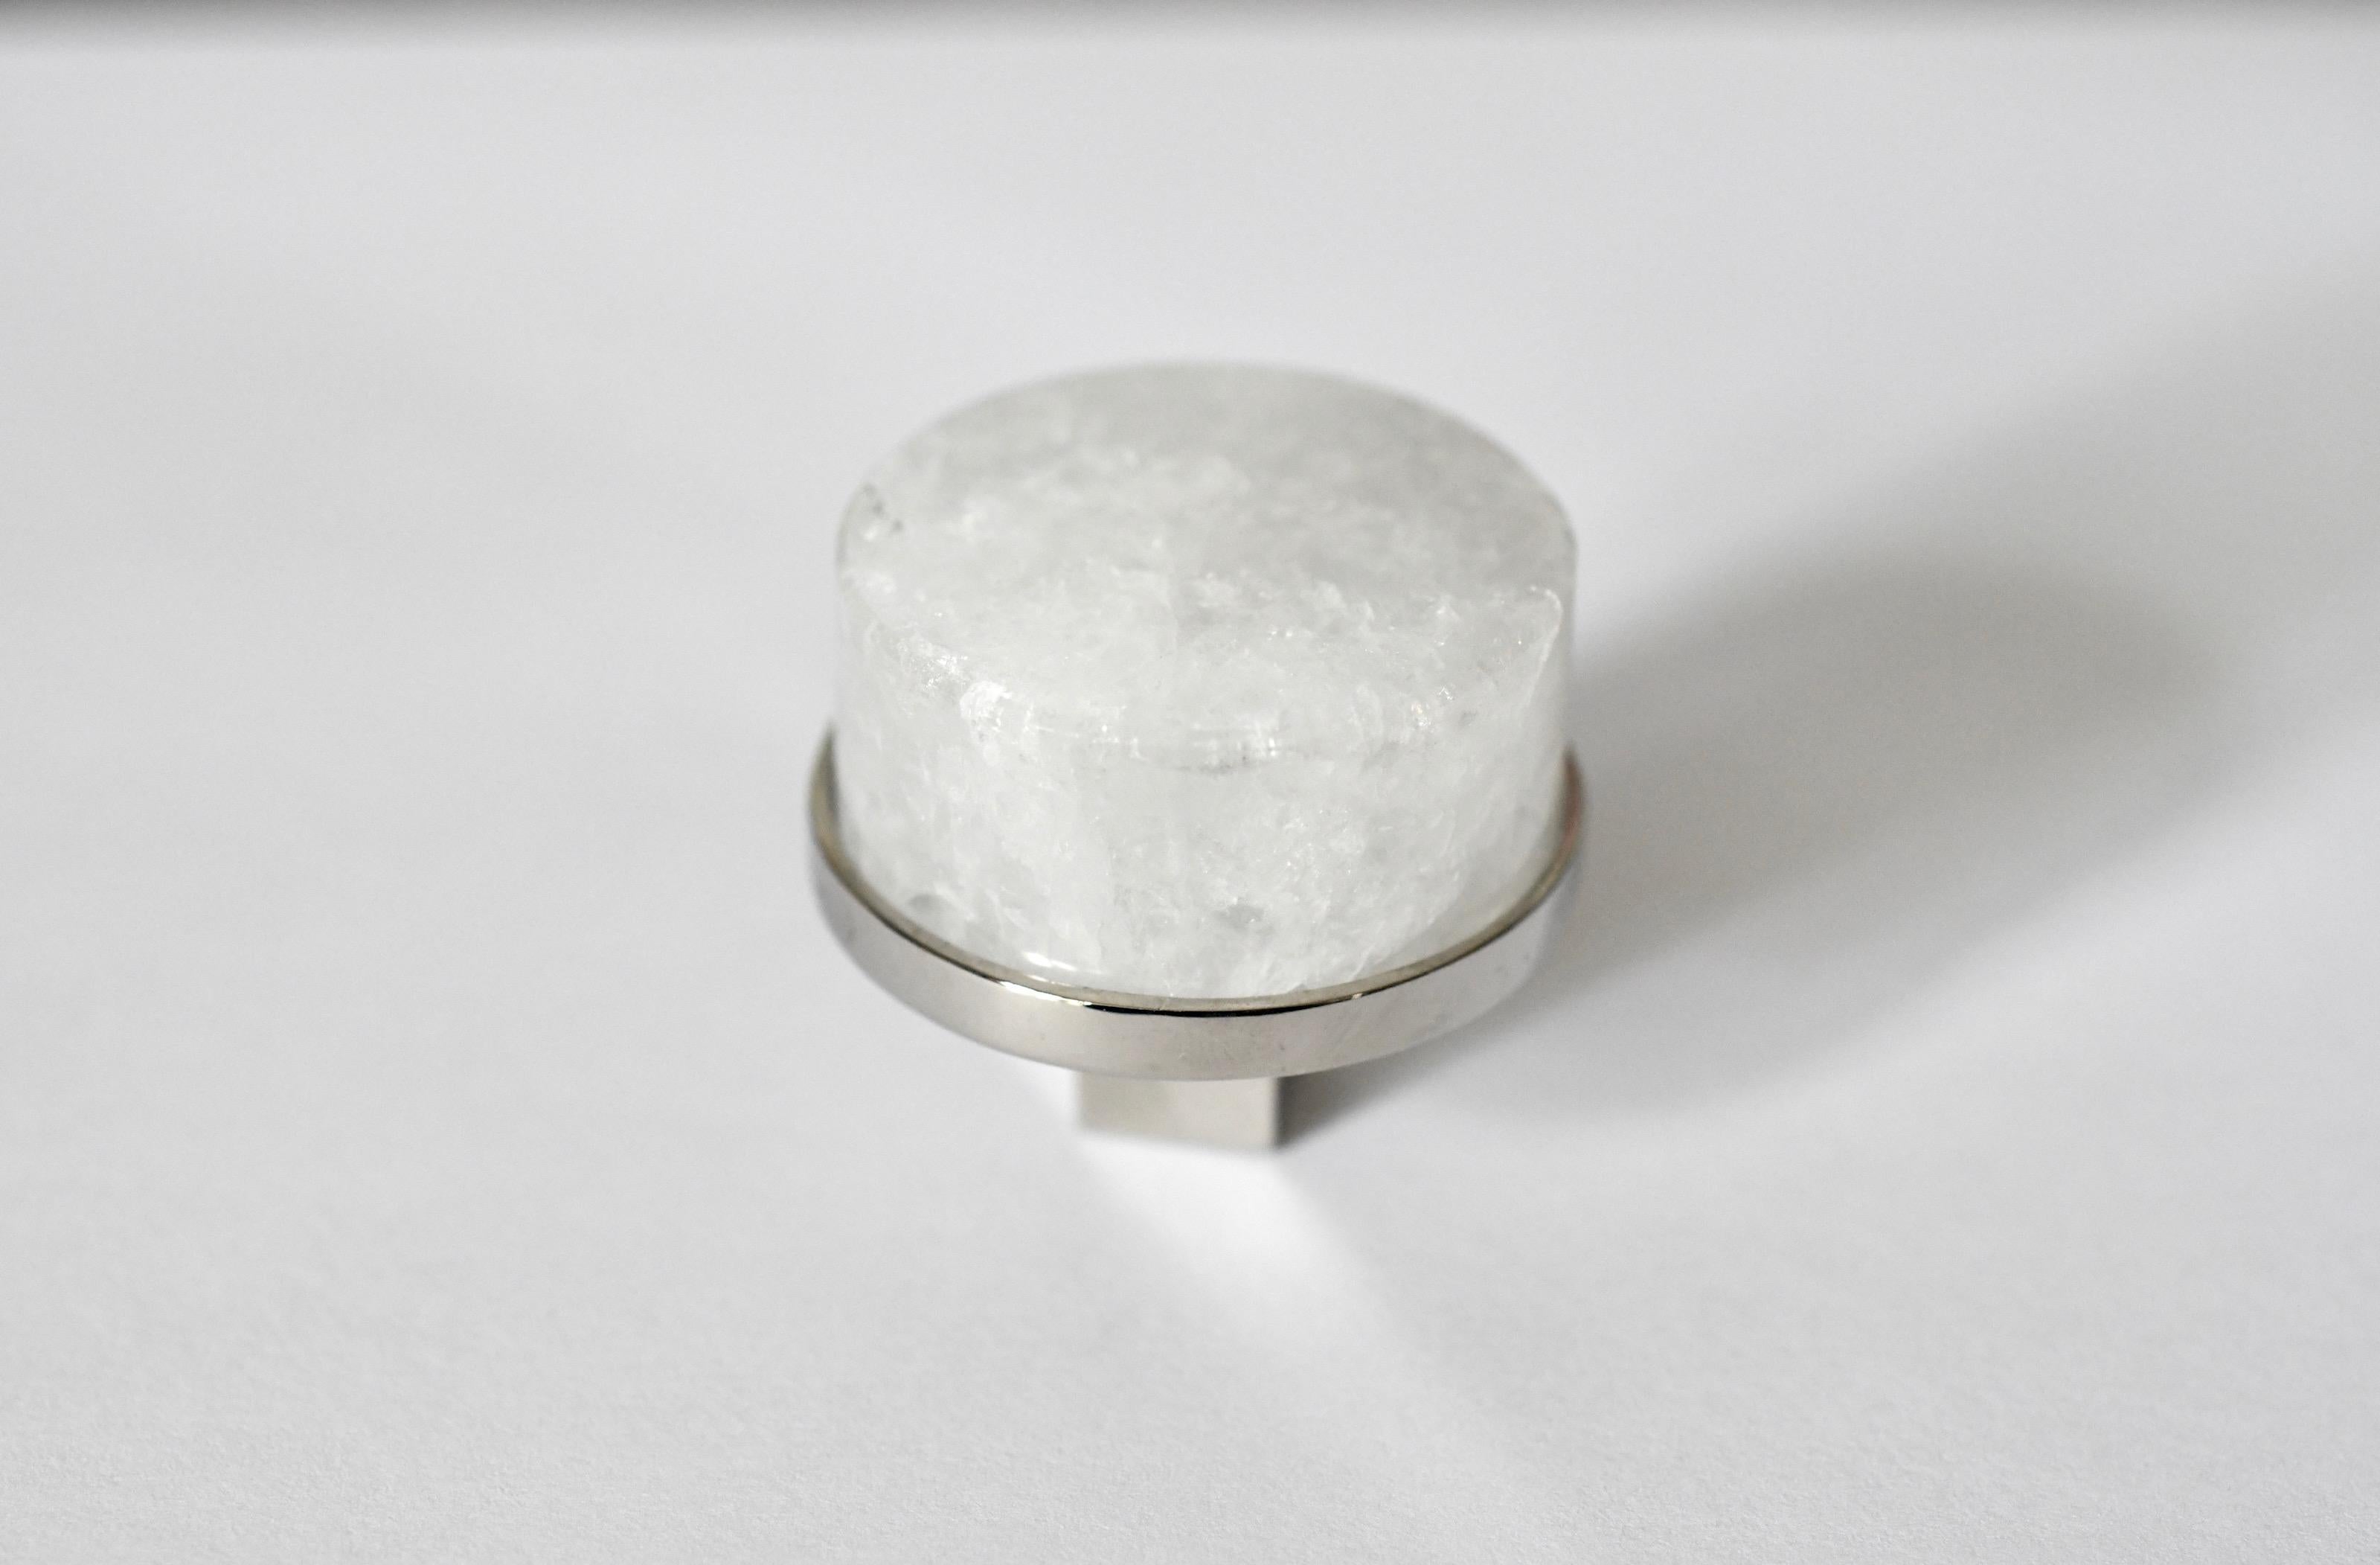 Kreisförmiger Bergkristall-Quarzknopf mit Nickelsockel. Erstellt von Phoenix Gallery, NYC.
Kundenspezifische Größe und Ausführung auf Anfrage.